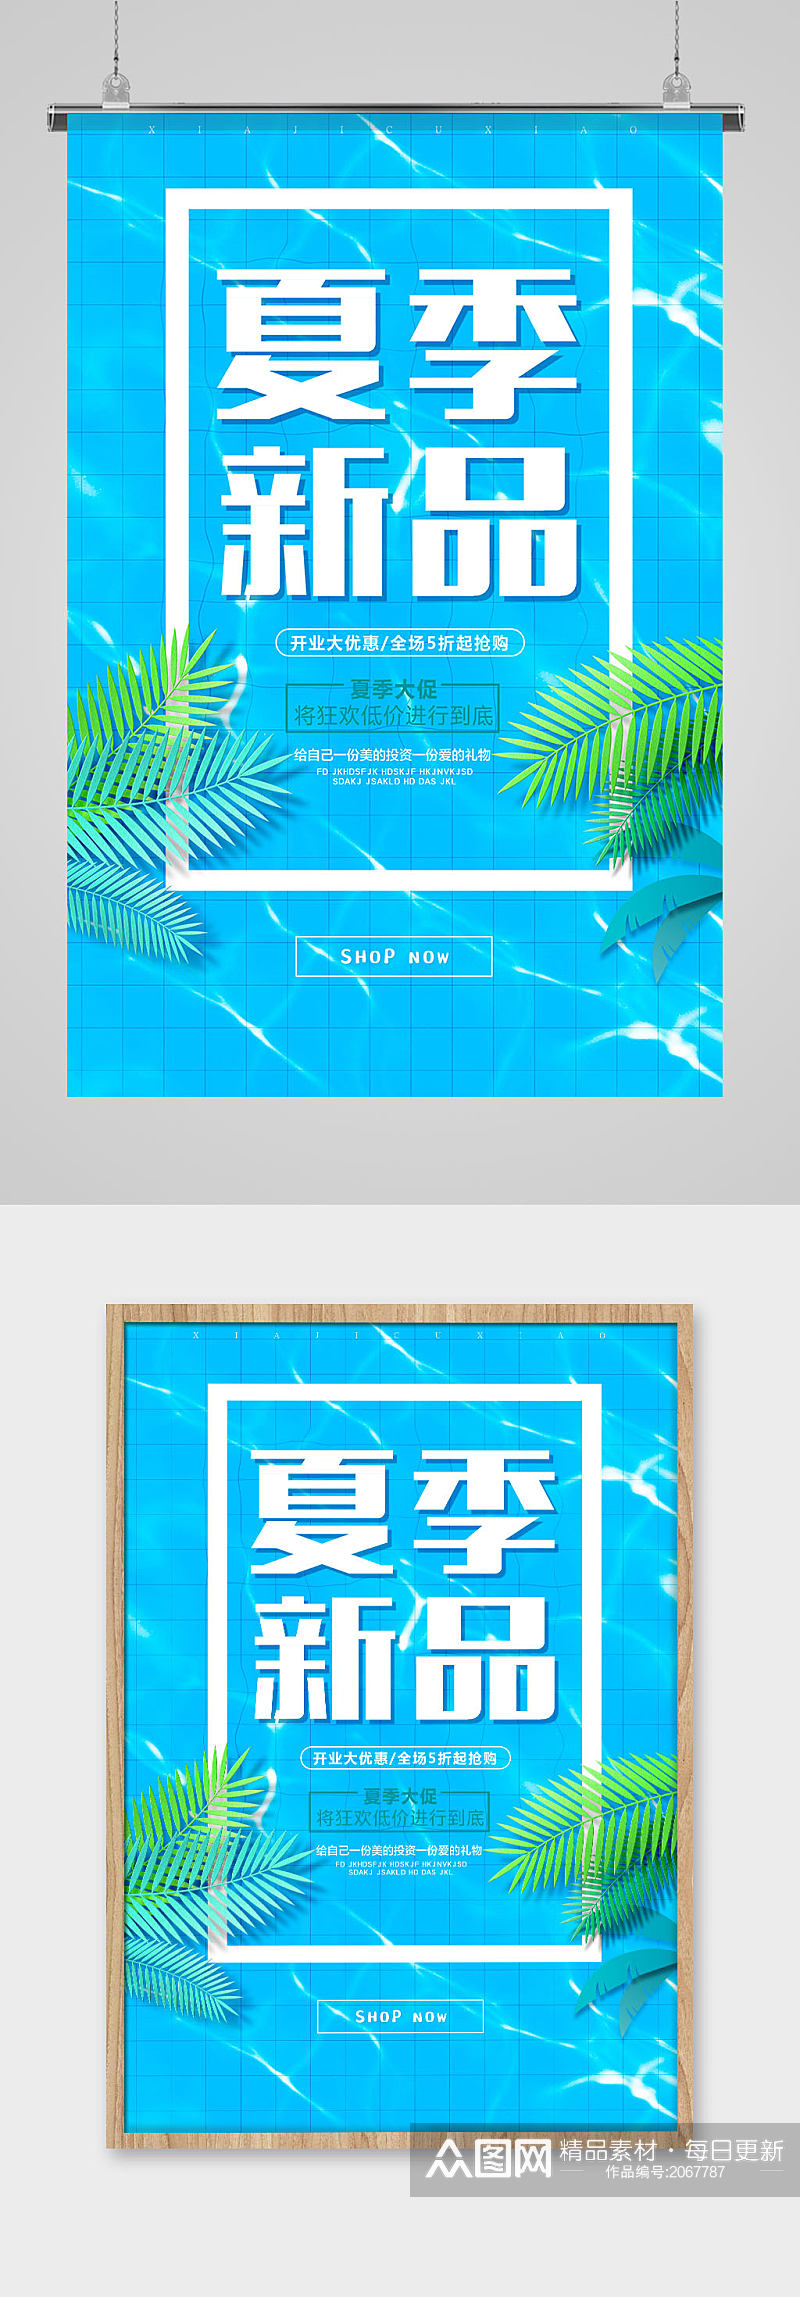 蓝色小清新夏季新品促销海报设计素材